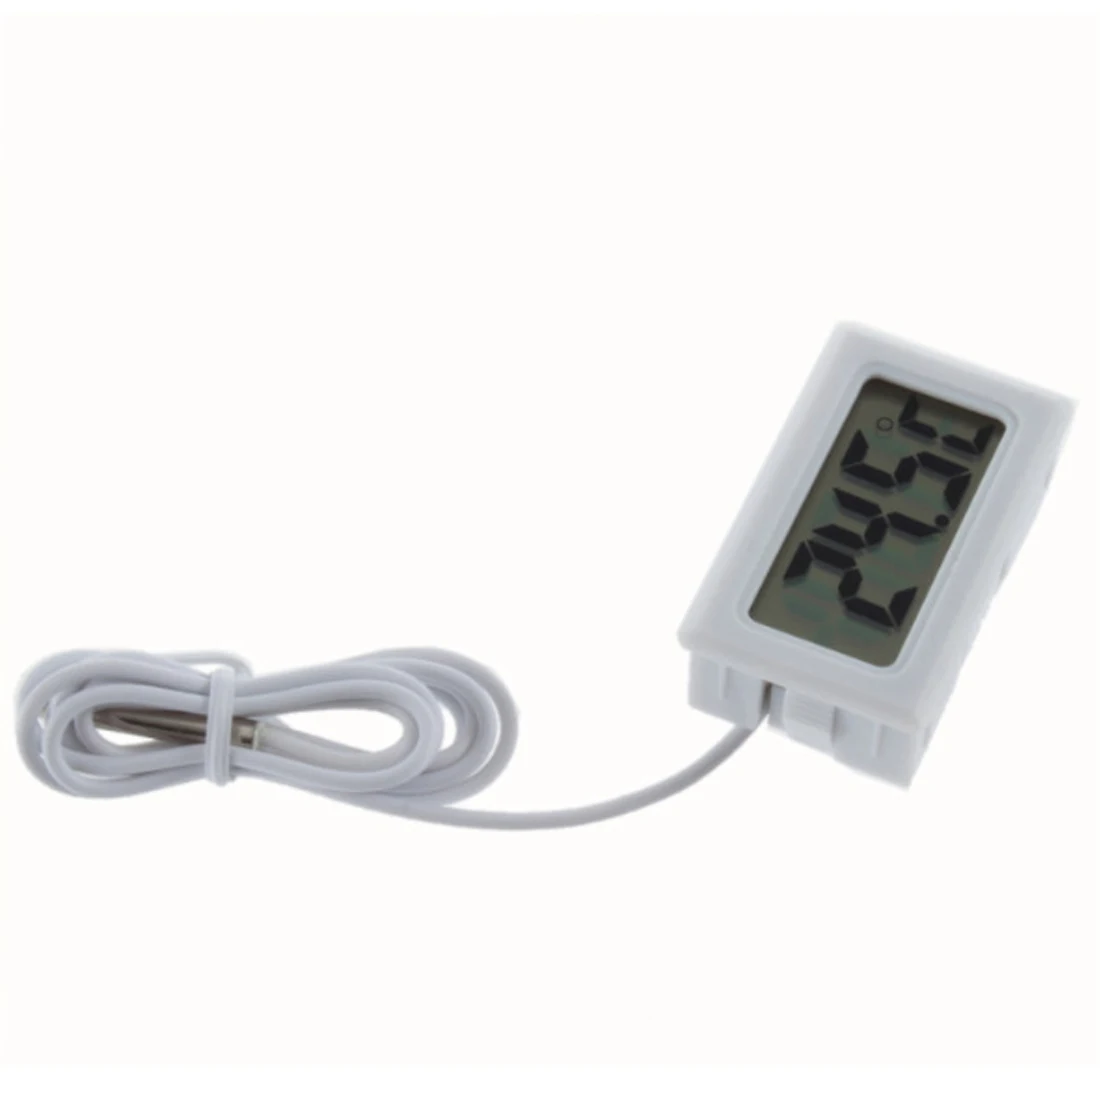 Мини ЖК-дисплей цифровой термометр 2 м 1,5 в термометр для холодильника датчик температуры морозильная камера Термометры для внутреннего и наружного использования - Цвет: 2M white